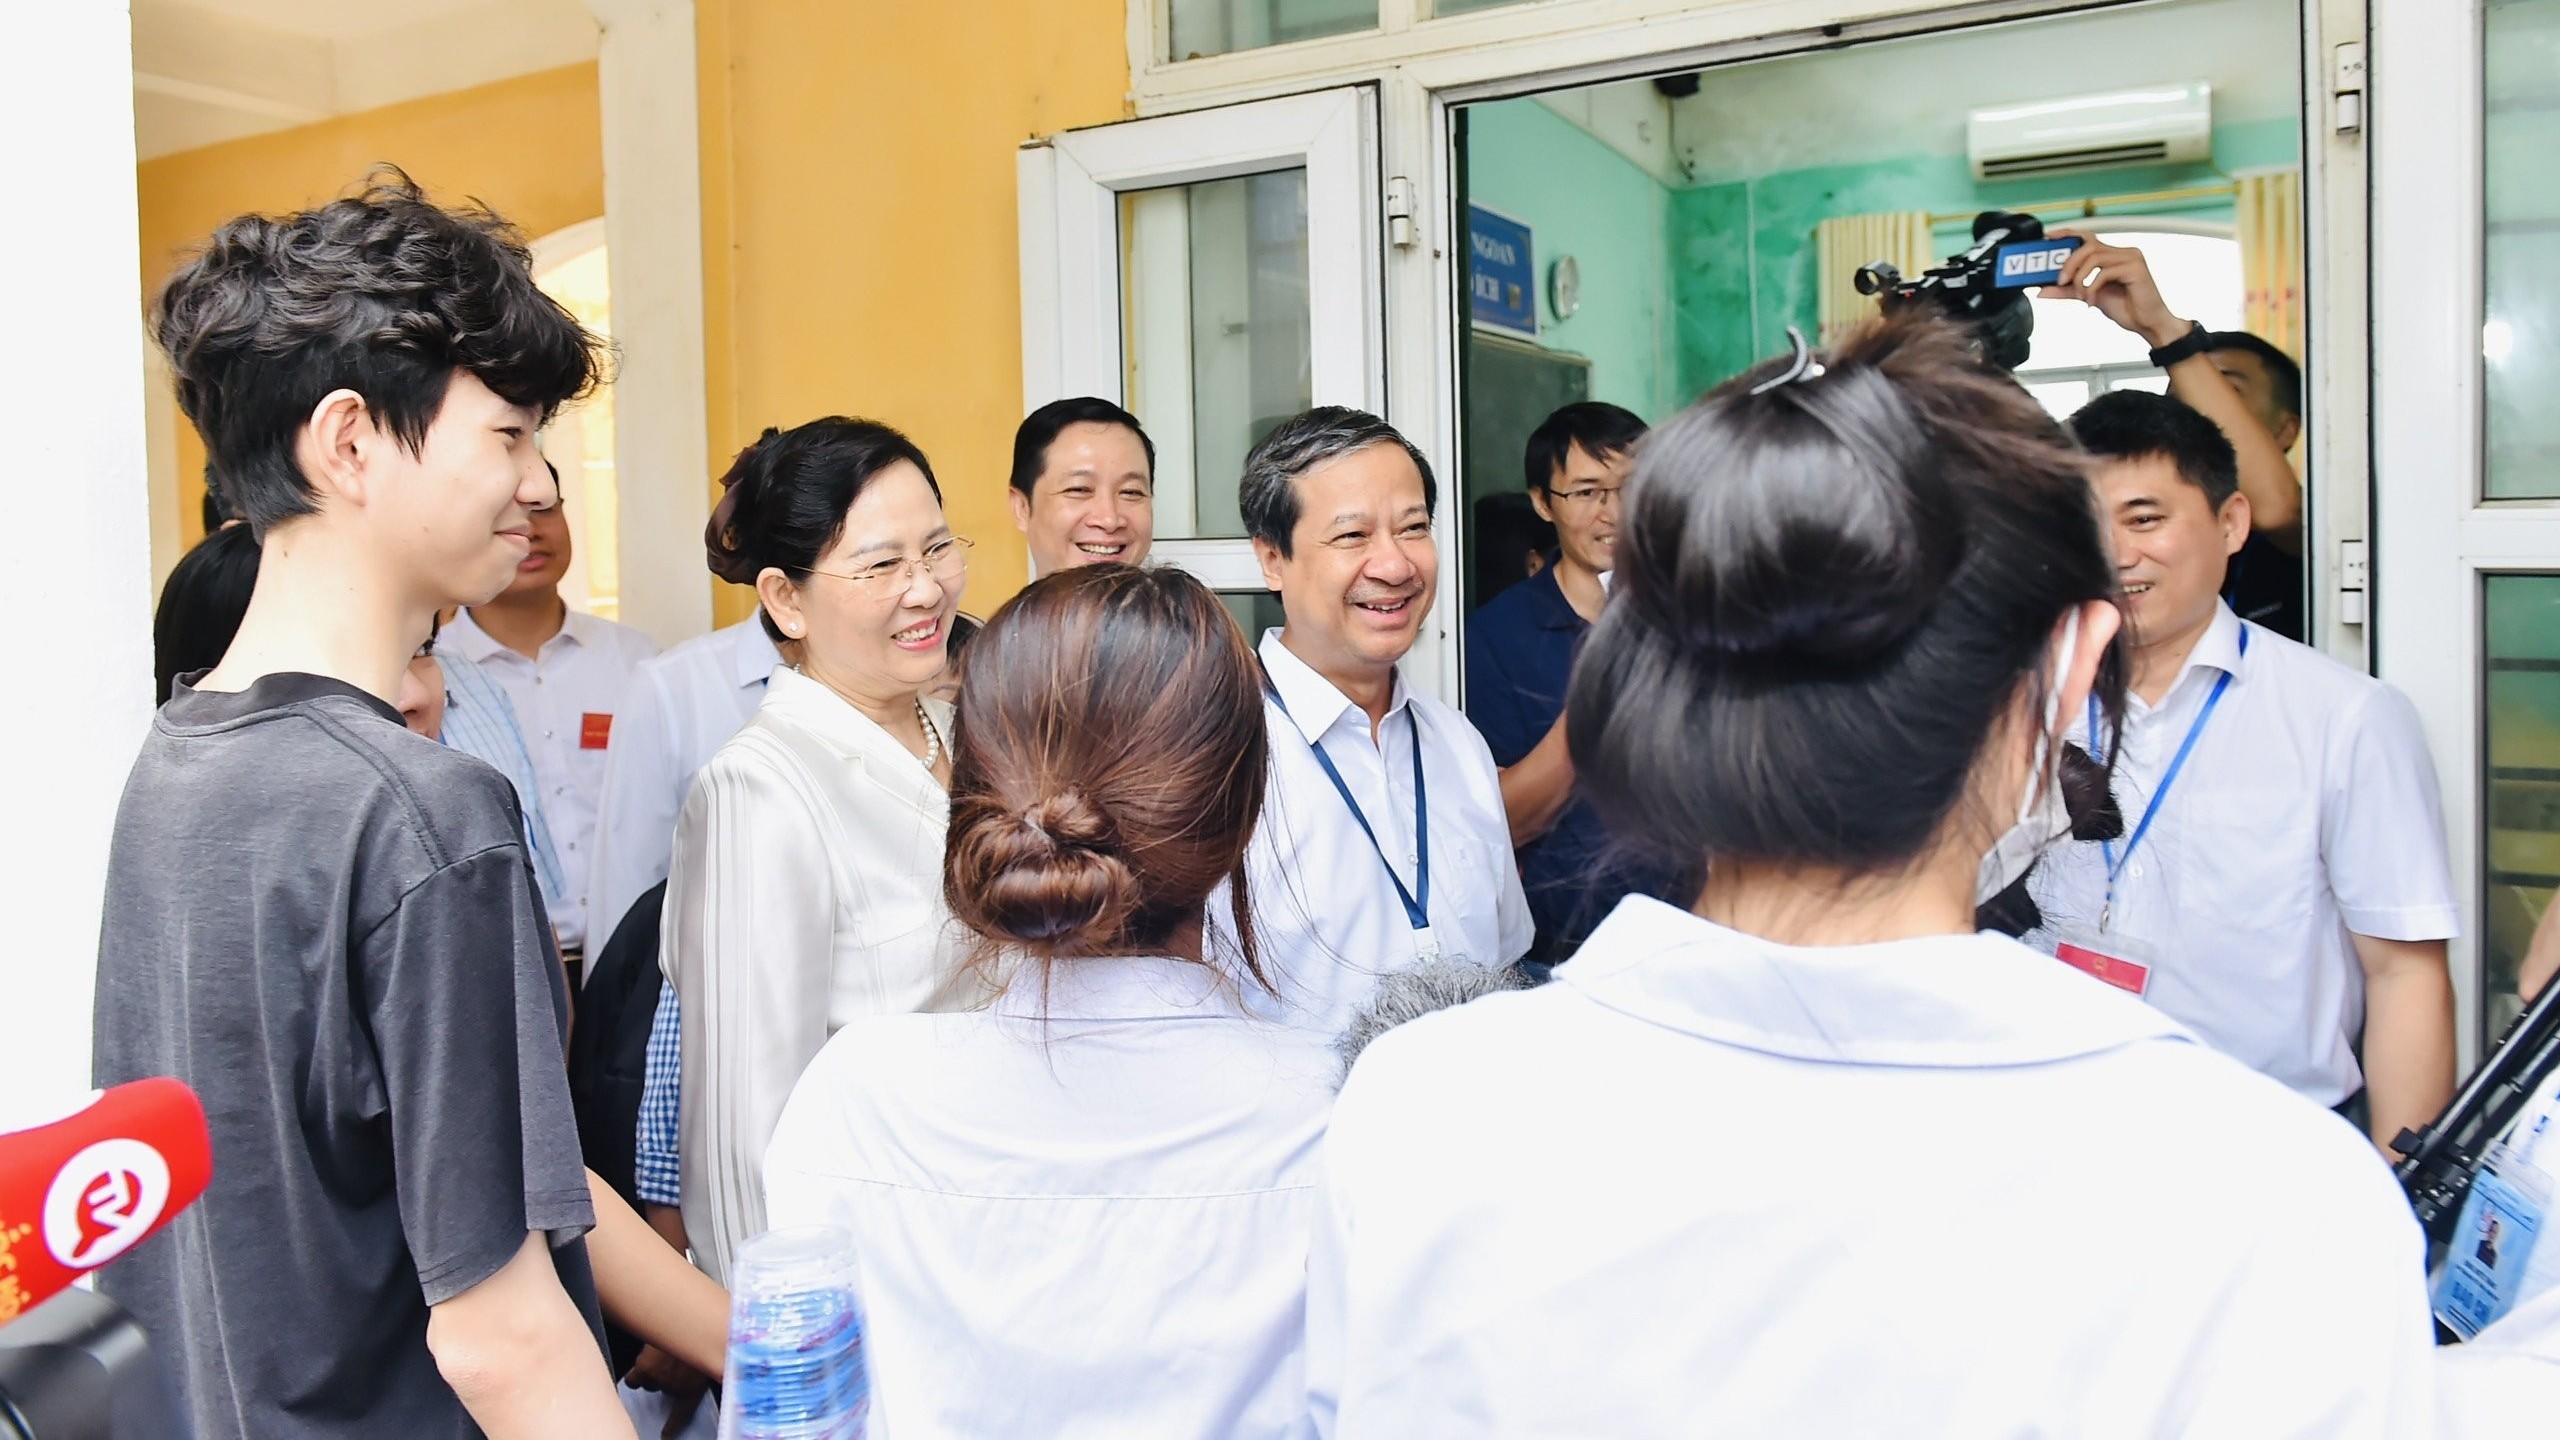 Bộ trưởng Nguyễn Kim Sơn động viên thí sinh, giáo viên trước kỳ thi tốt nghiệp THPT